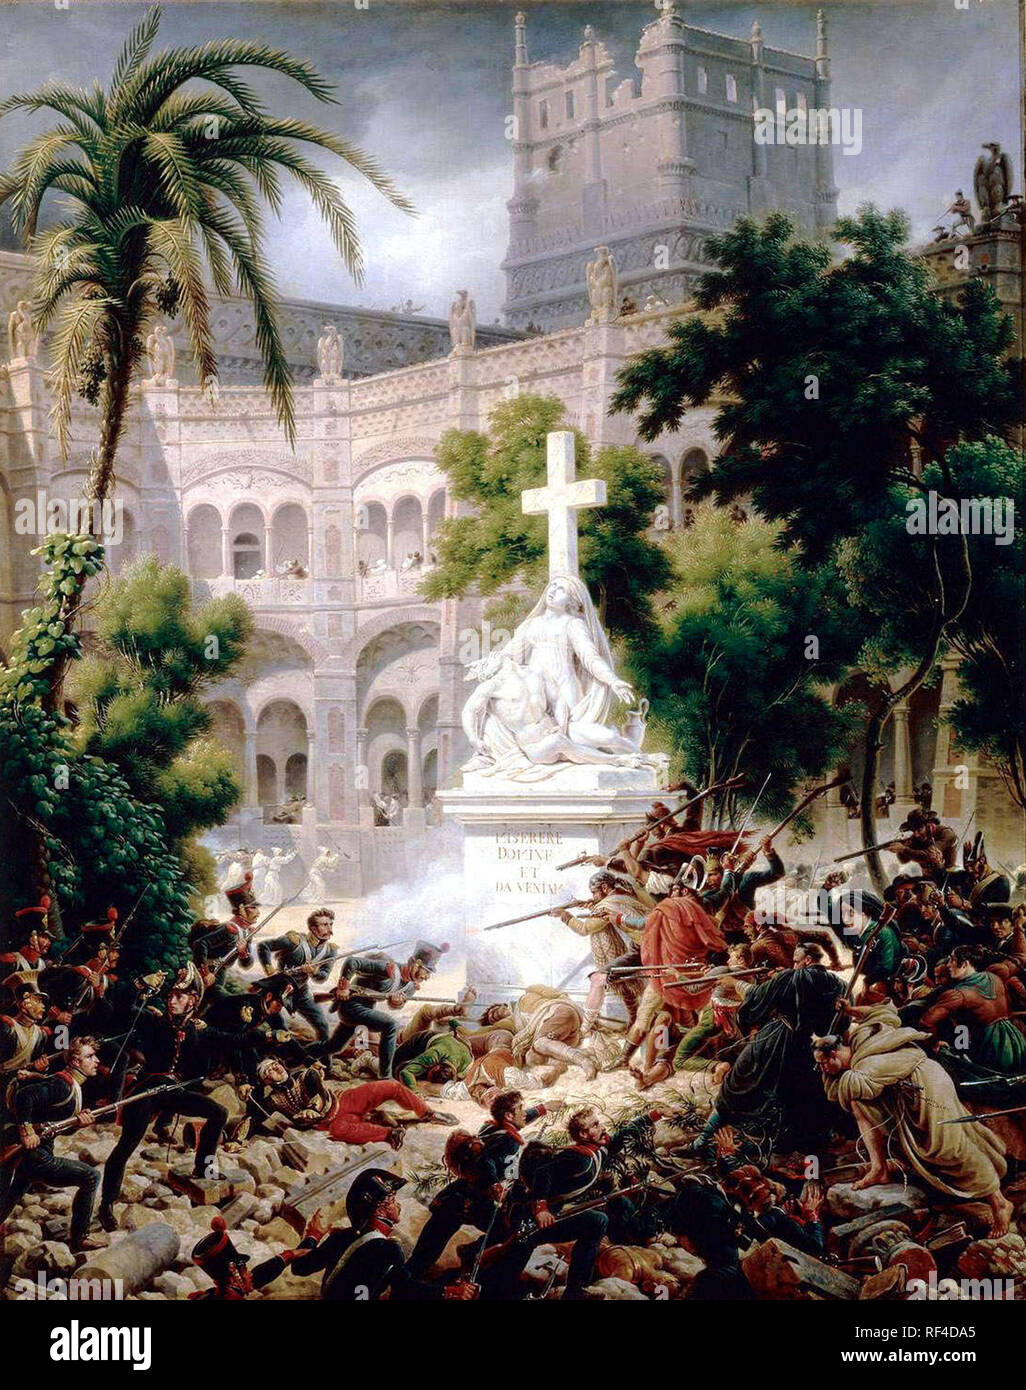 Siège de Saragosse (1809) par le général Louis-François Lejeune, second siège de Saragosse a été la prise de la ville espagnole de Saragosse (également connu sous le nom de Saragosse) pendant la guerre d'Espagne. Montre les combats du 8 février 1809. Banque D'Images